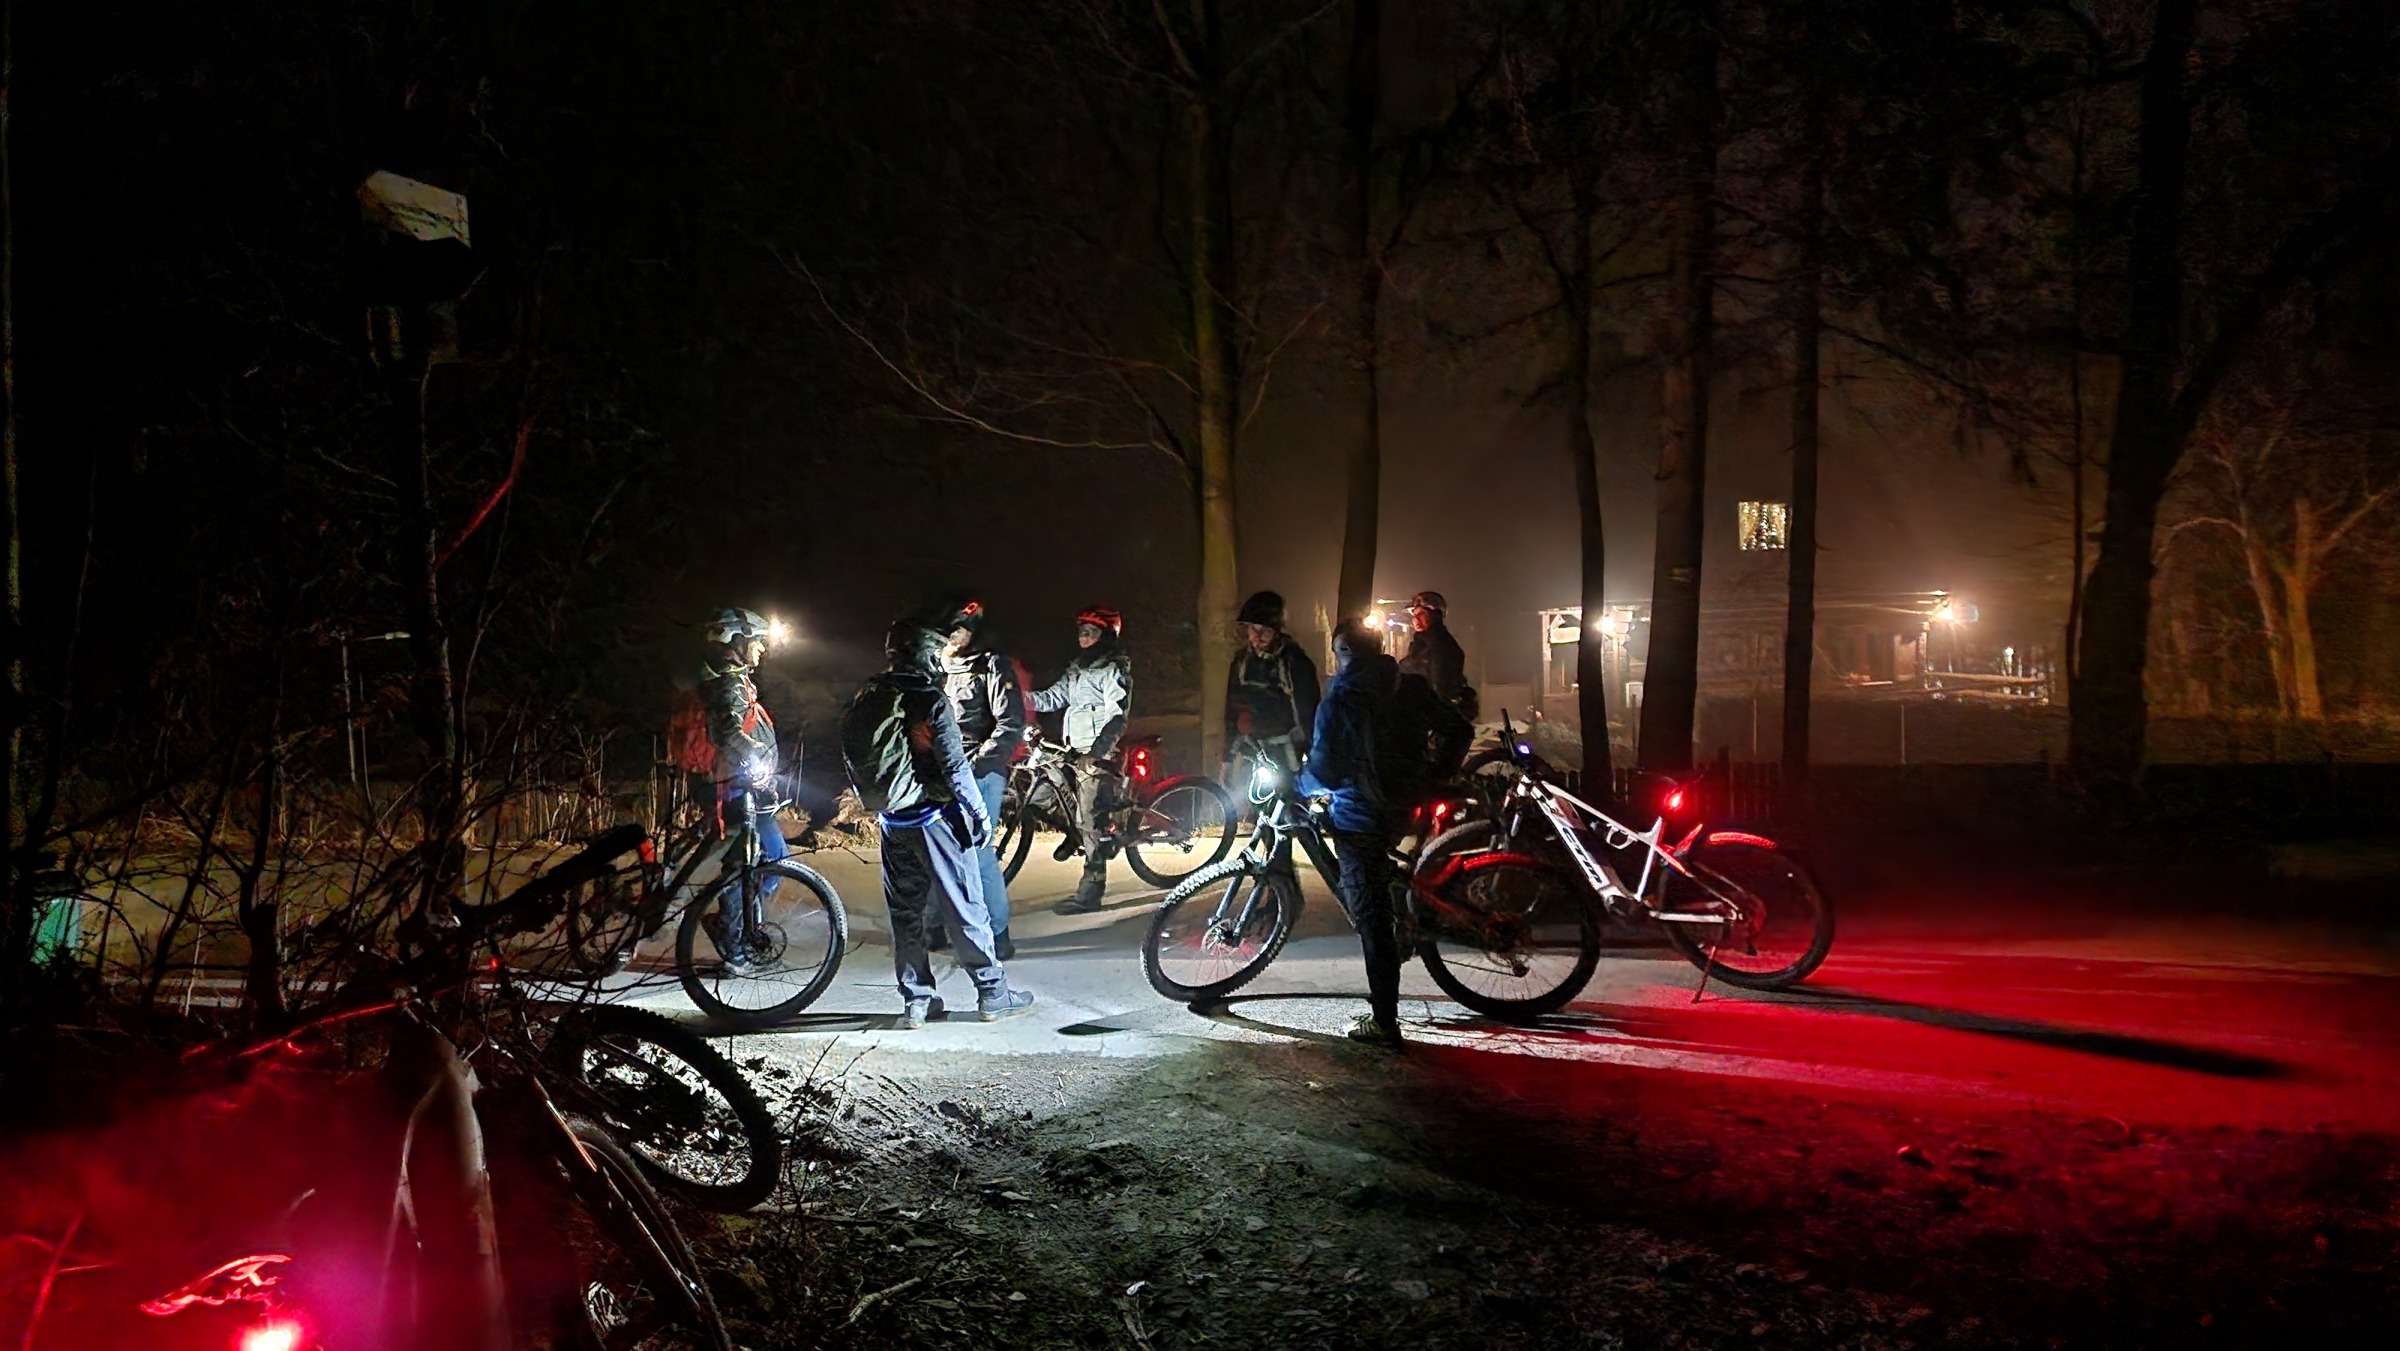 bielsko.info: #AktywnaŚroda rowerowo w stronę Jaworza. Będzie niezła przygoda!